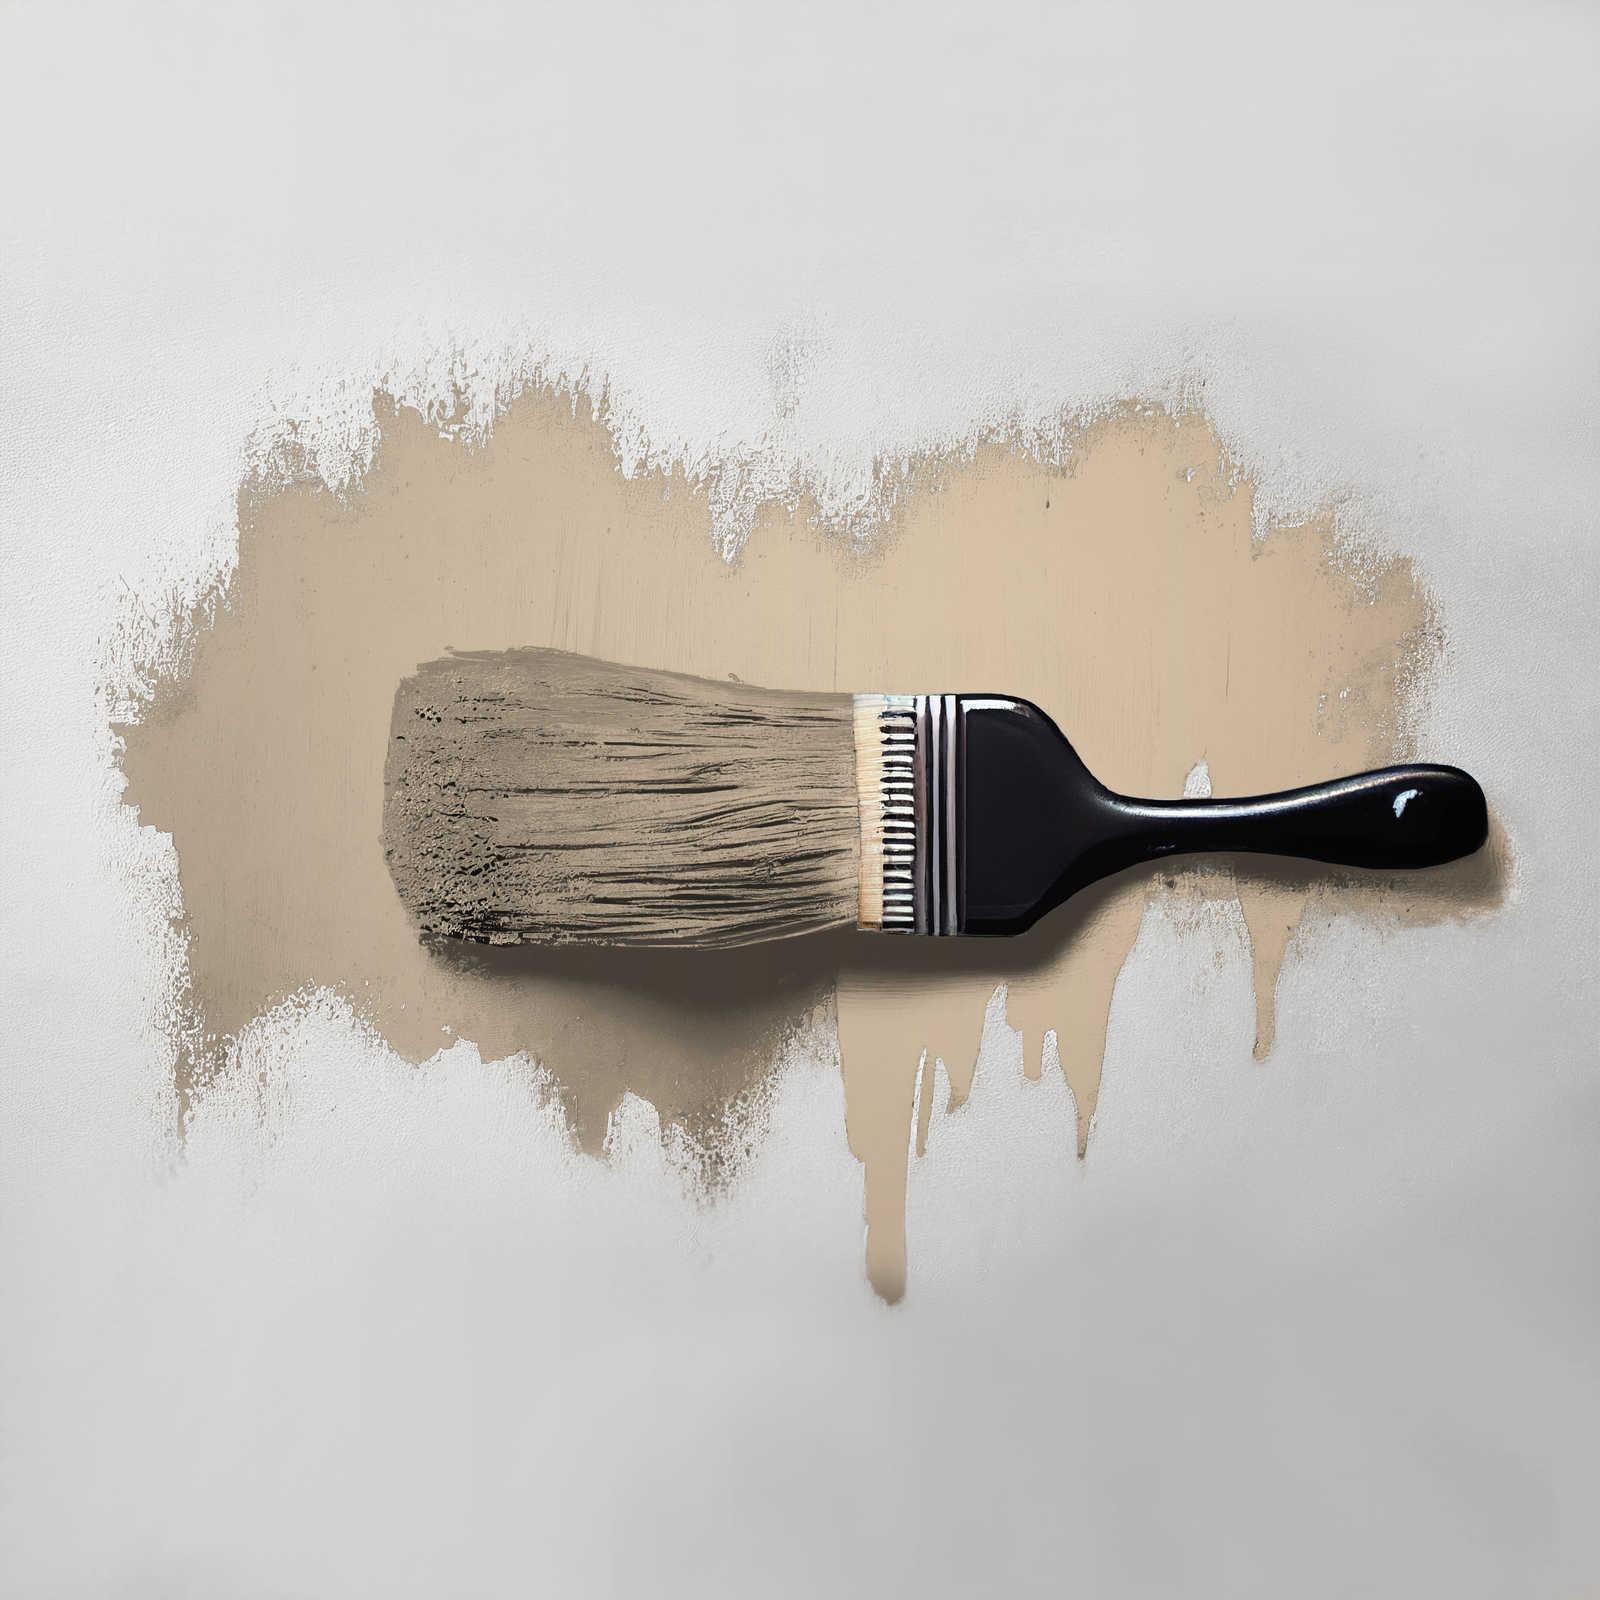             Wall Paint TCK6002 »Flat White Coffee« in warm beige – 2.5 litre
        